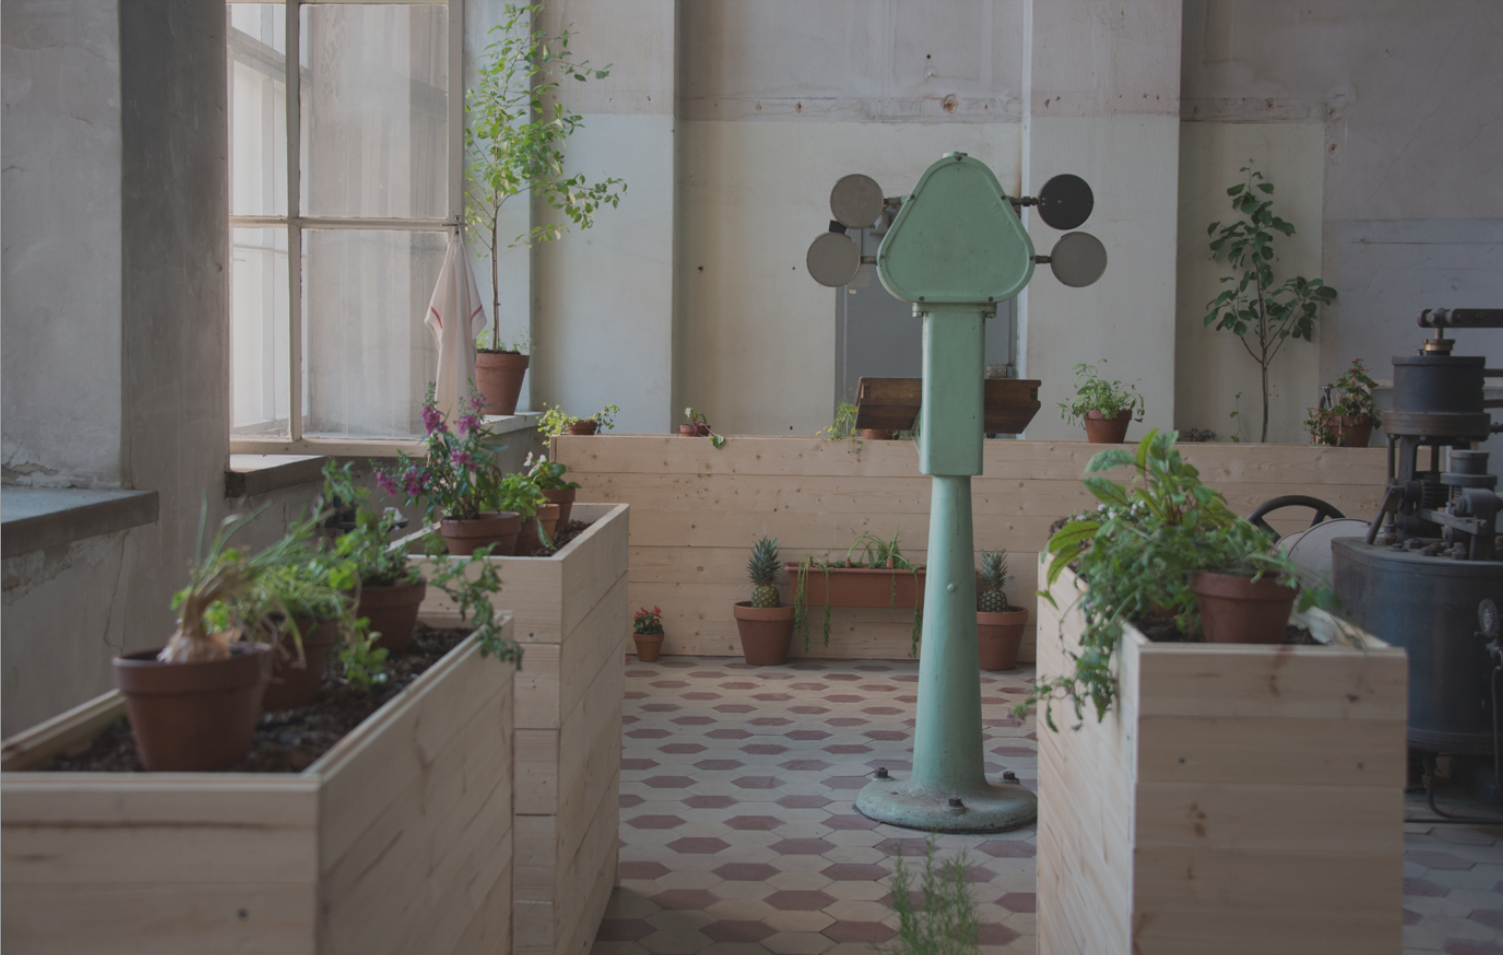 Erno-Erik Raitasen installaatio Kuoleman puutarha nähtiin vuonna 2016 Saatanan kesänäyttelyssä. Teoksen raaka-aineina käytettiin muun muassa kompostoitua biojätettä ja ulostetta, kastematoja, pääasiassa löydettyjä kasveja. 